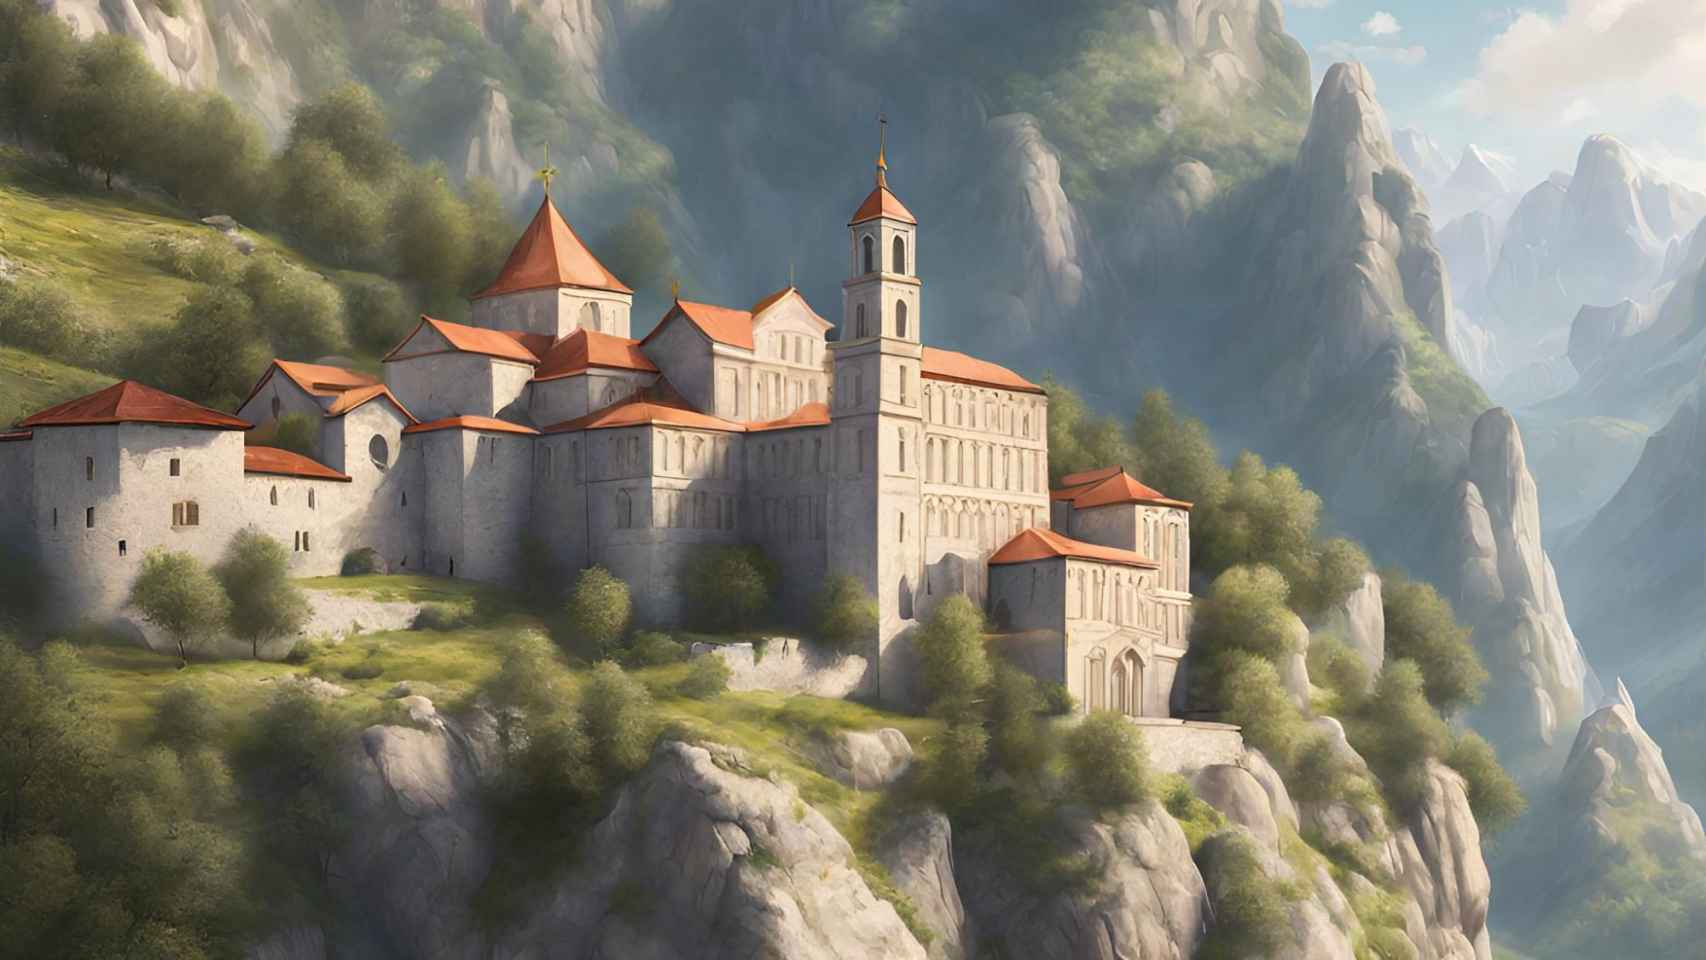 Imagen generada con IA de un monasterio en lo alto de una colina